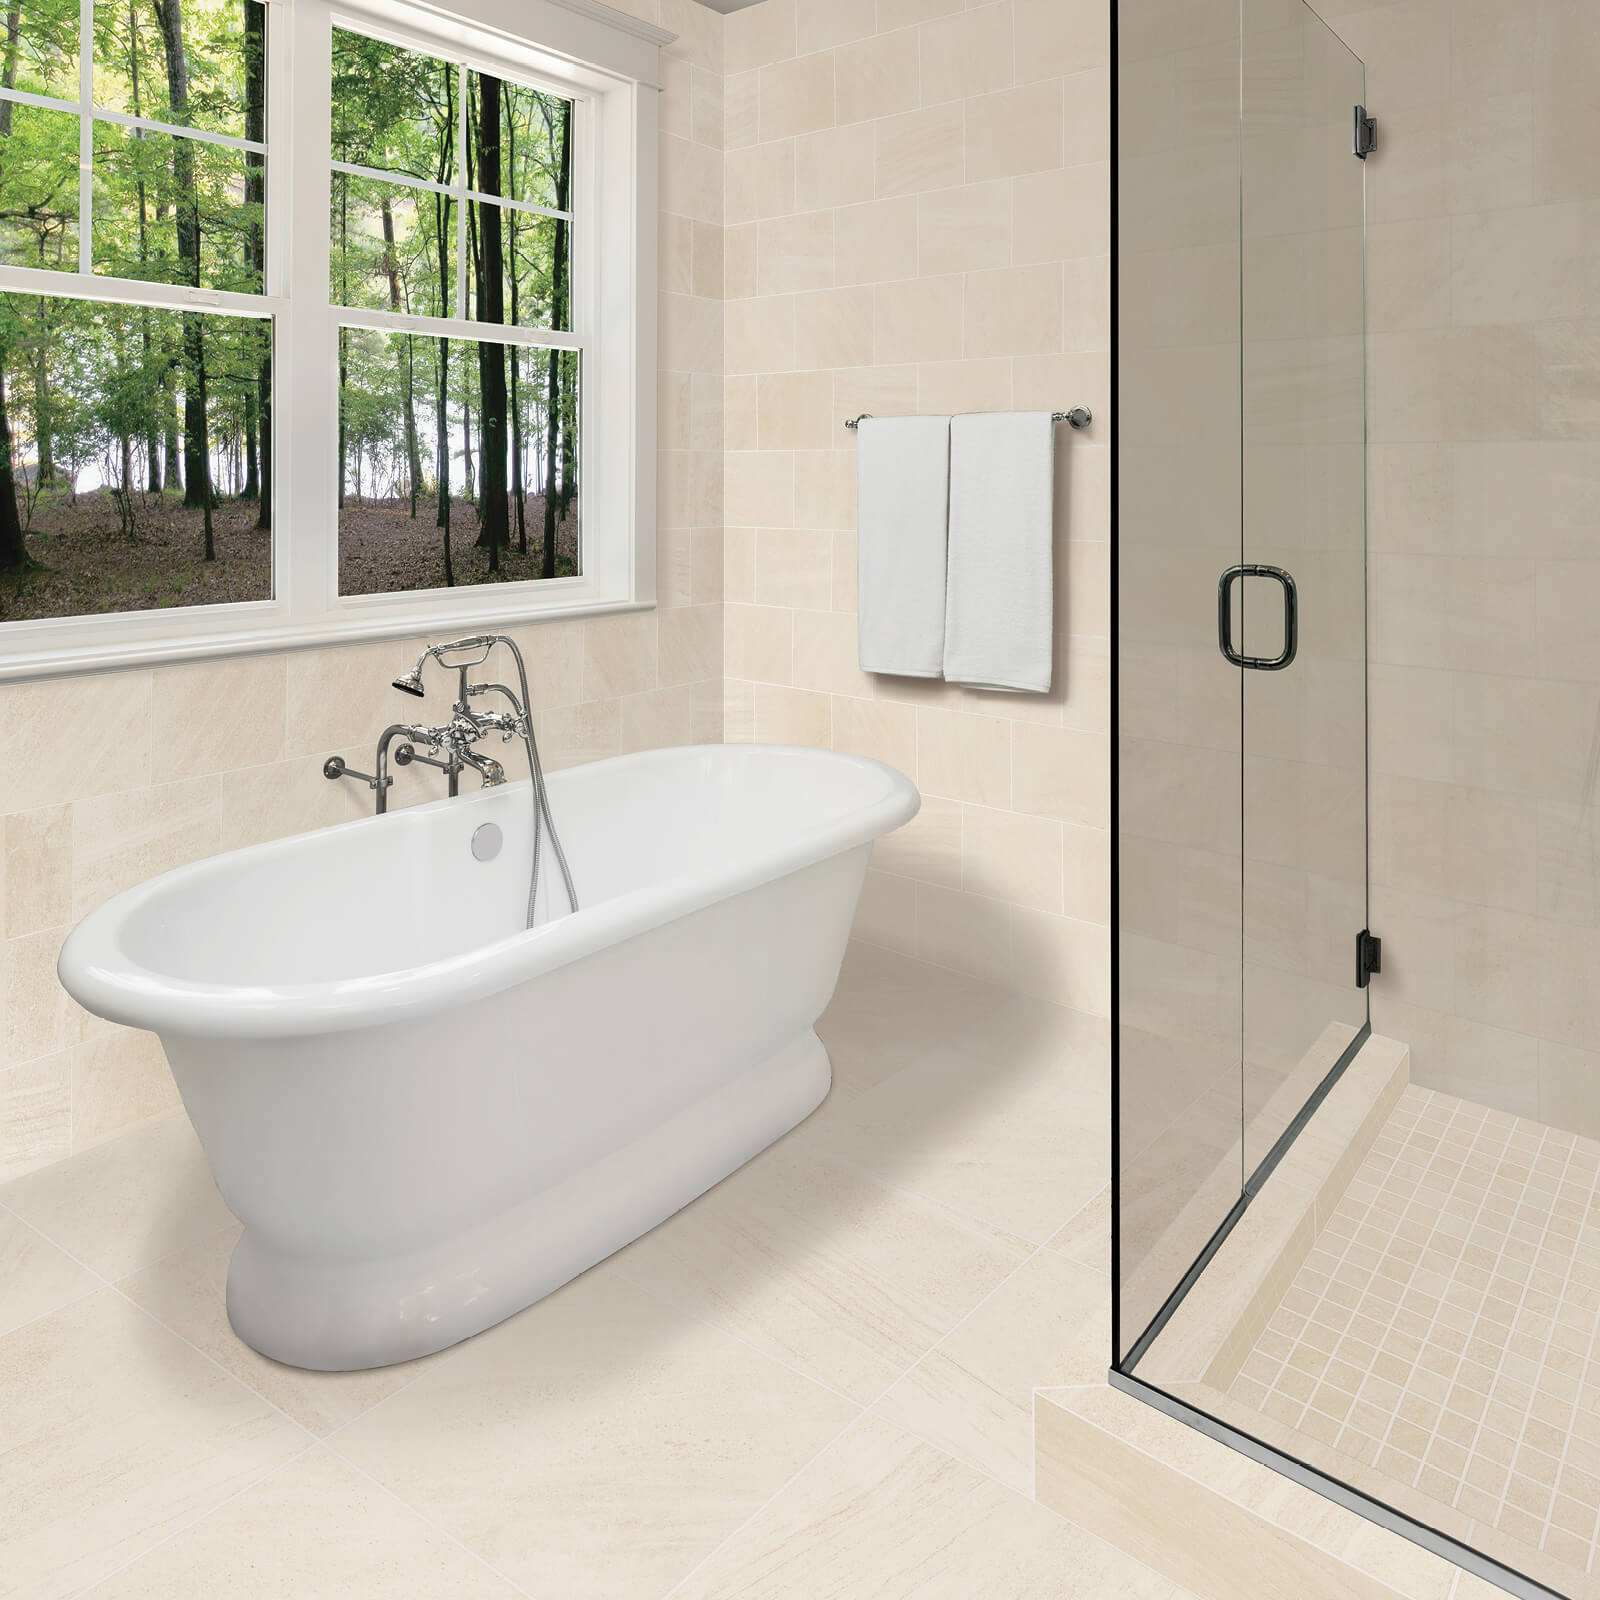 Shower room tiles | Bodamer Brothers Flooring